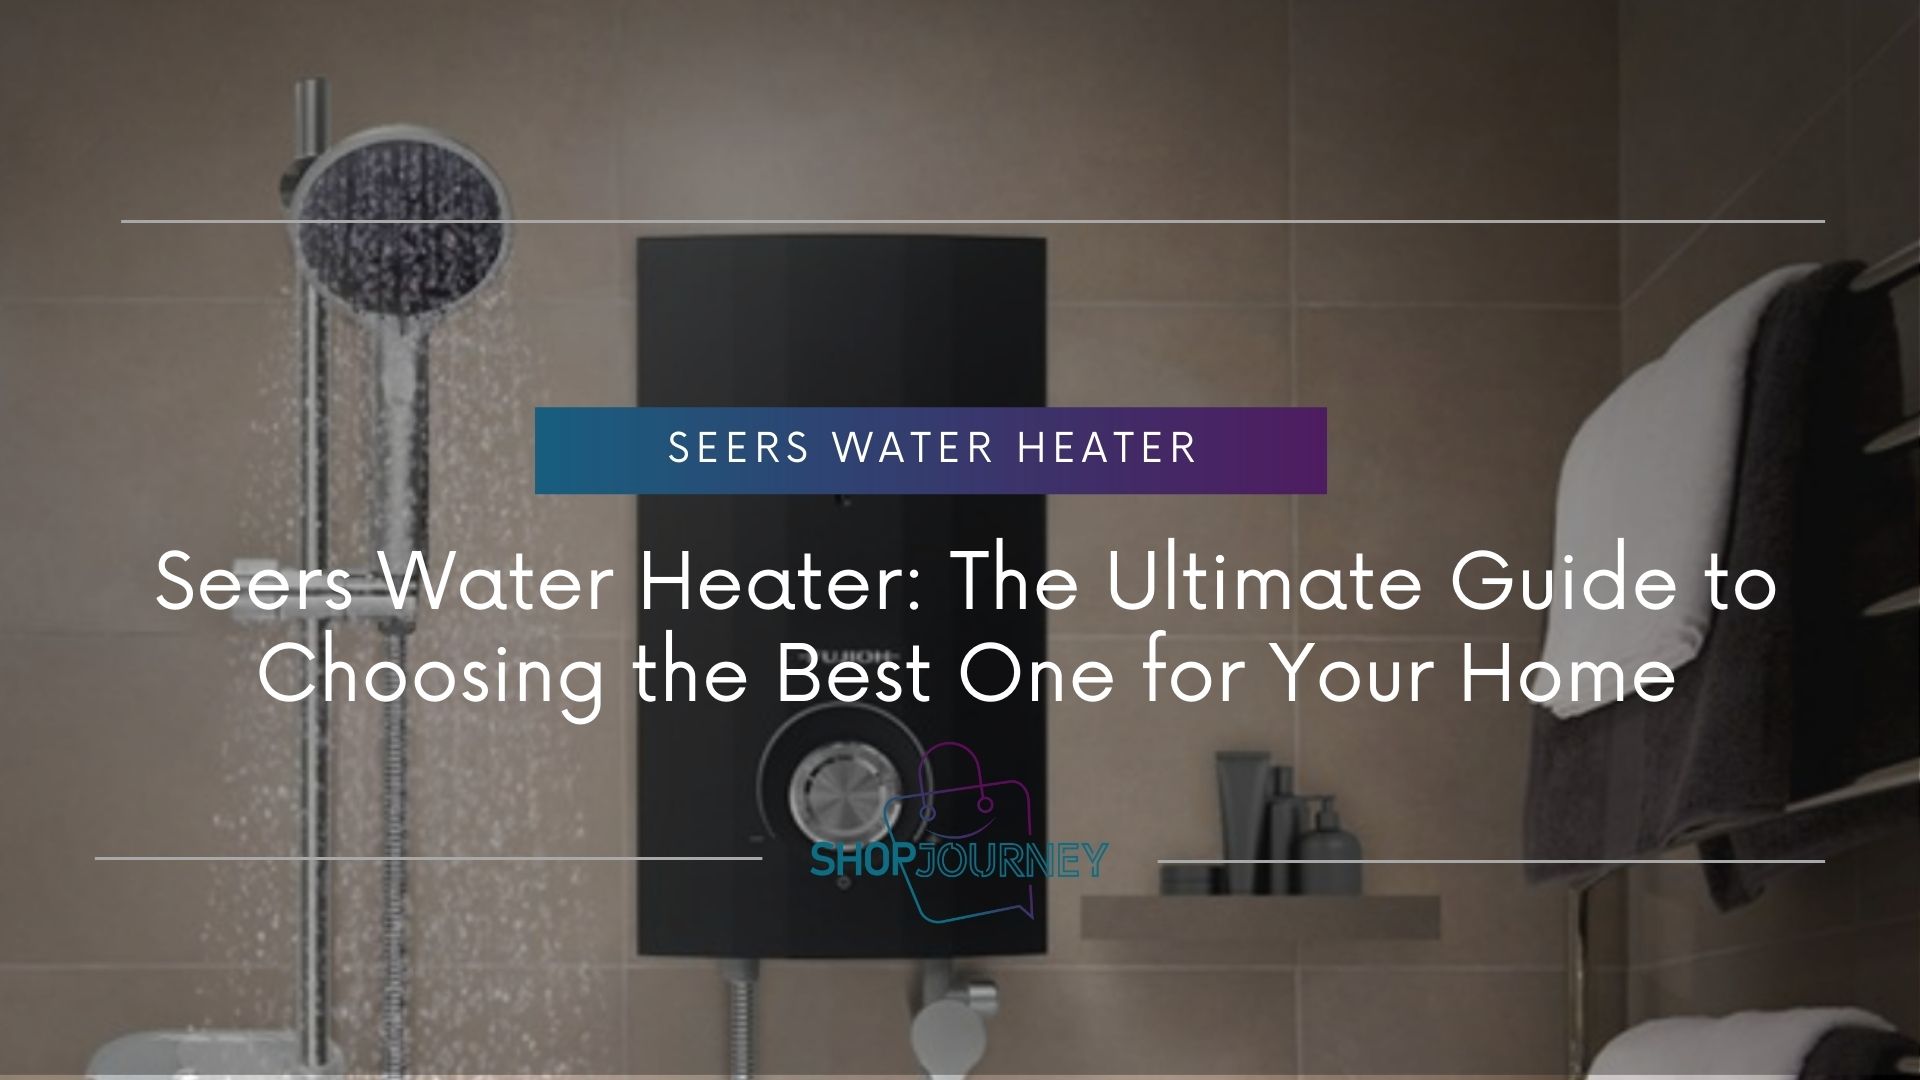 Seers Water Heater - Shop Journey